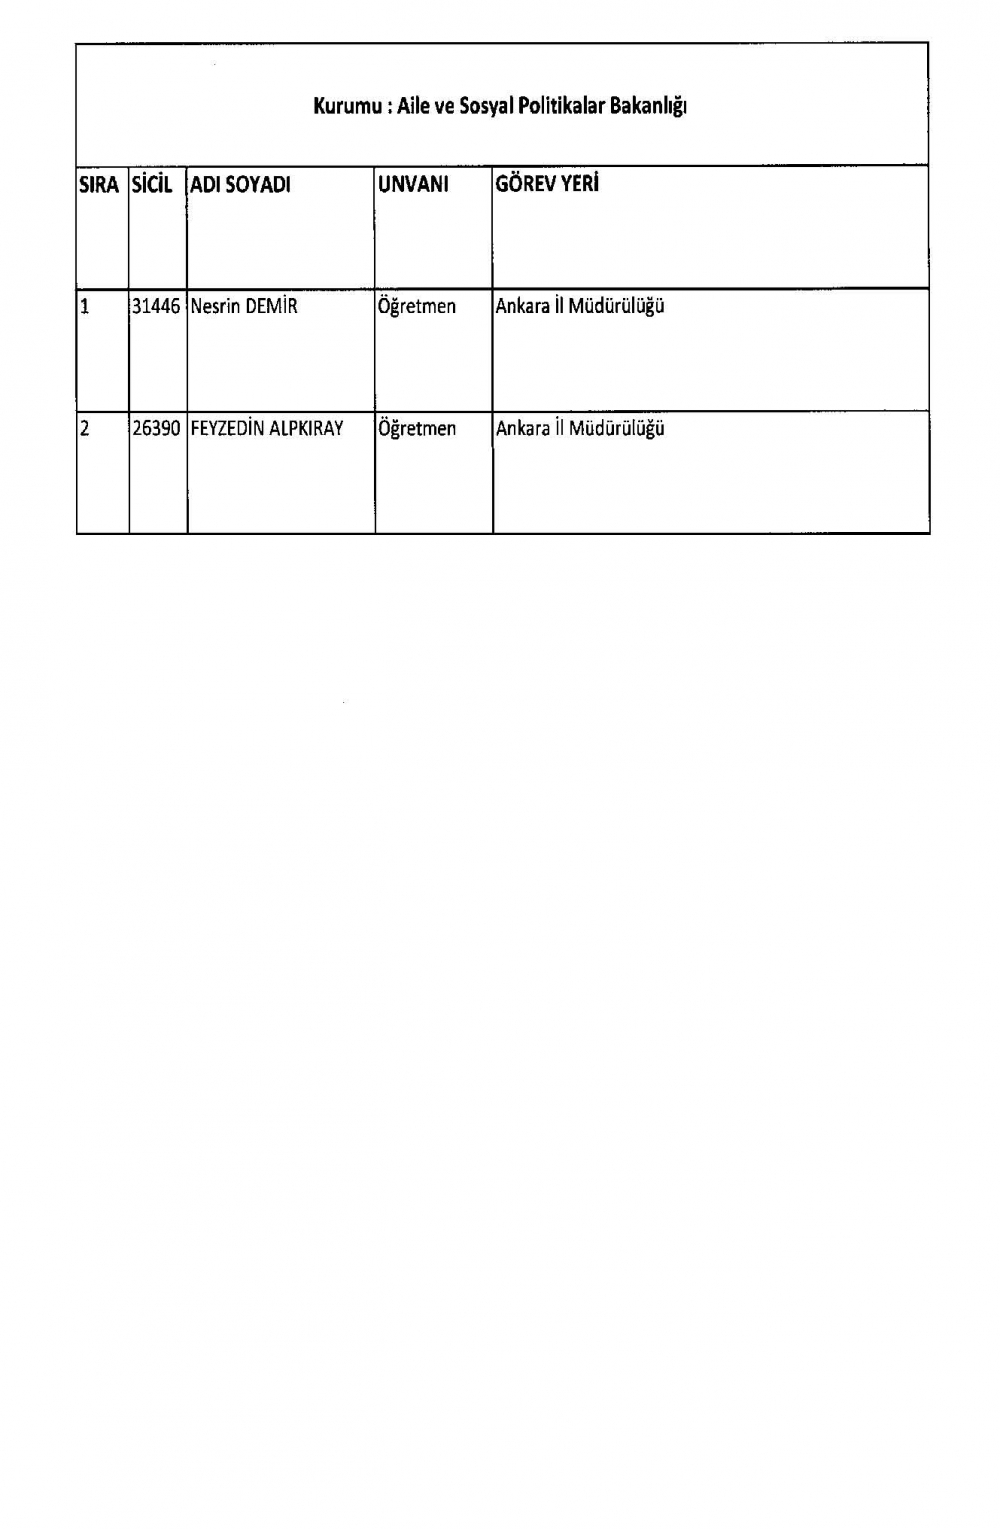 KHK ile görevine iade edilen personelin tam listesi 15 Temmuz 6